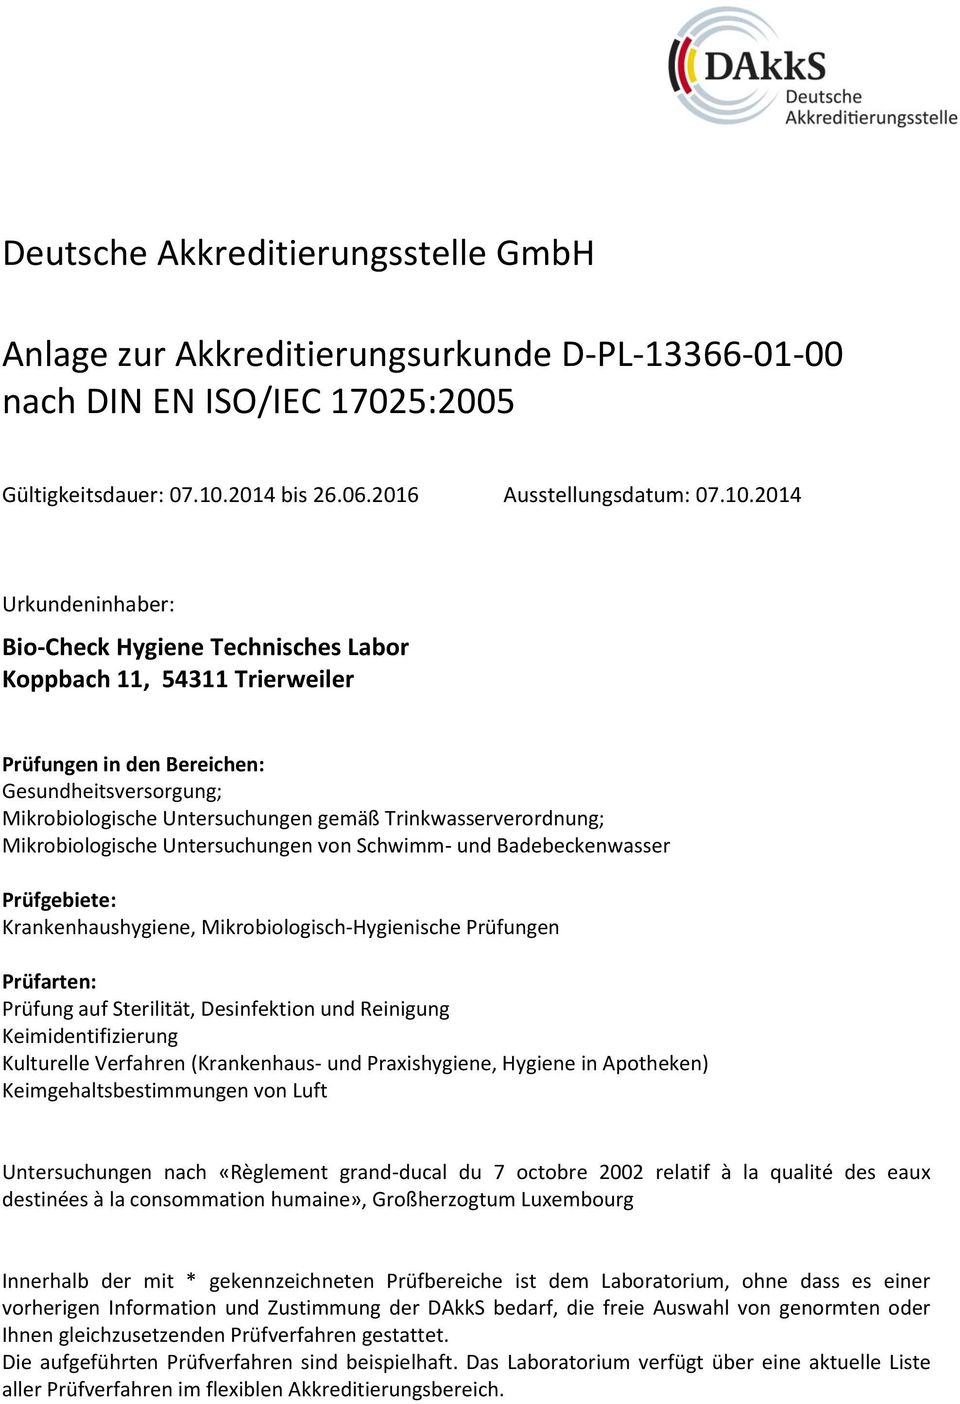 2014 Urkundeninhaber: Bio-Check Hygiene Technisches Labor Koppbach 11, 54311 Trierweiler Prüfungen in den Bereichen: Gesundheitsversorgung; Mikrobiologische Untersuchungen gemäß